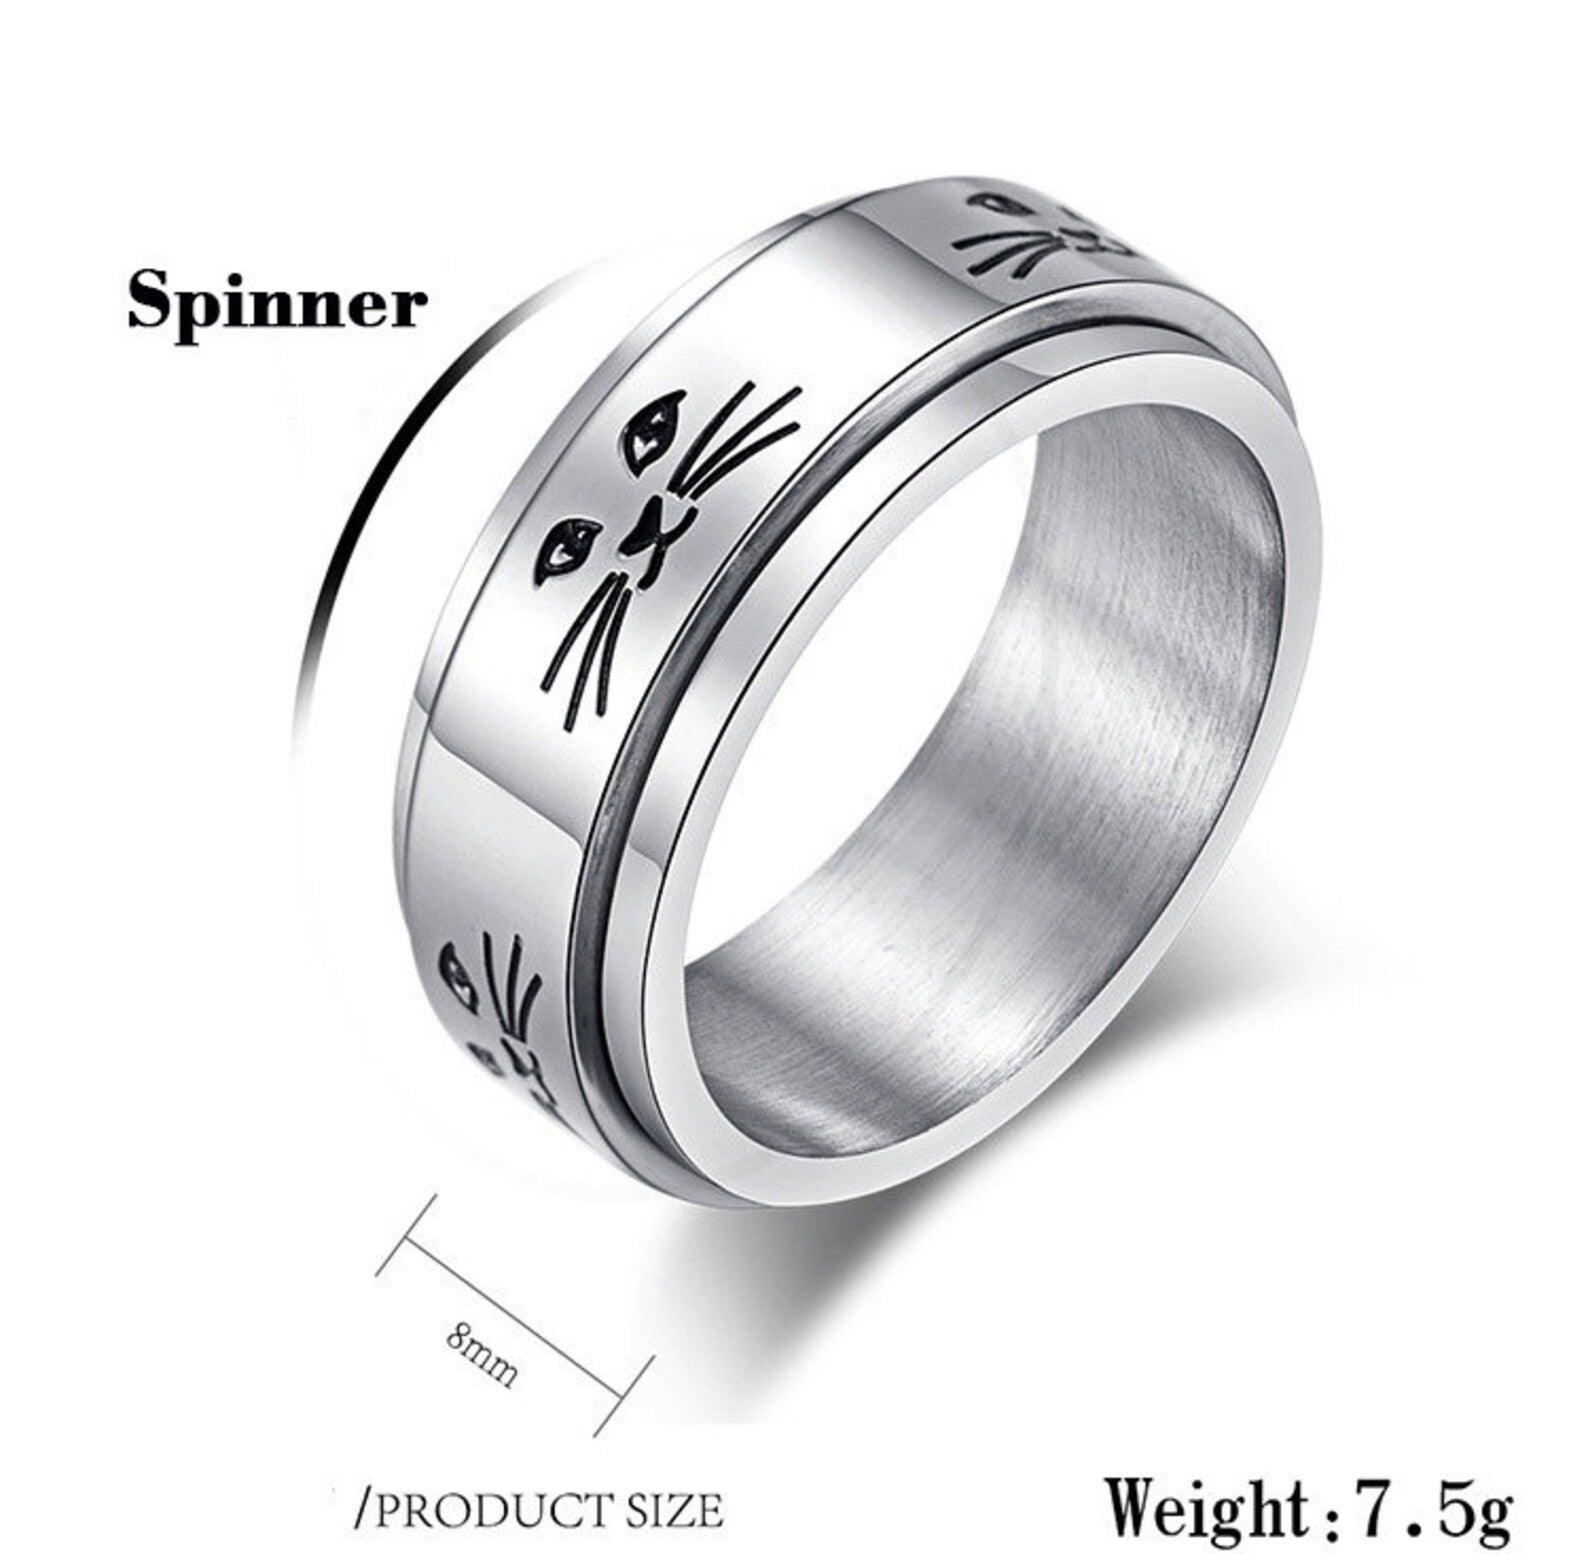 Engraved Cat Spinner Ring